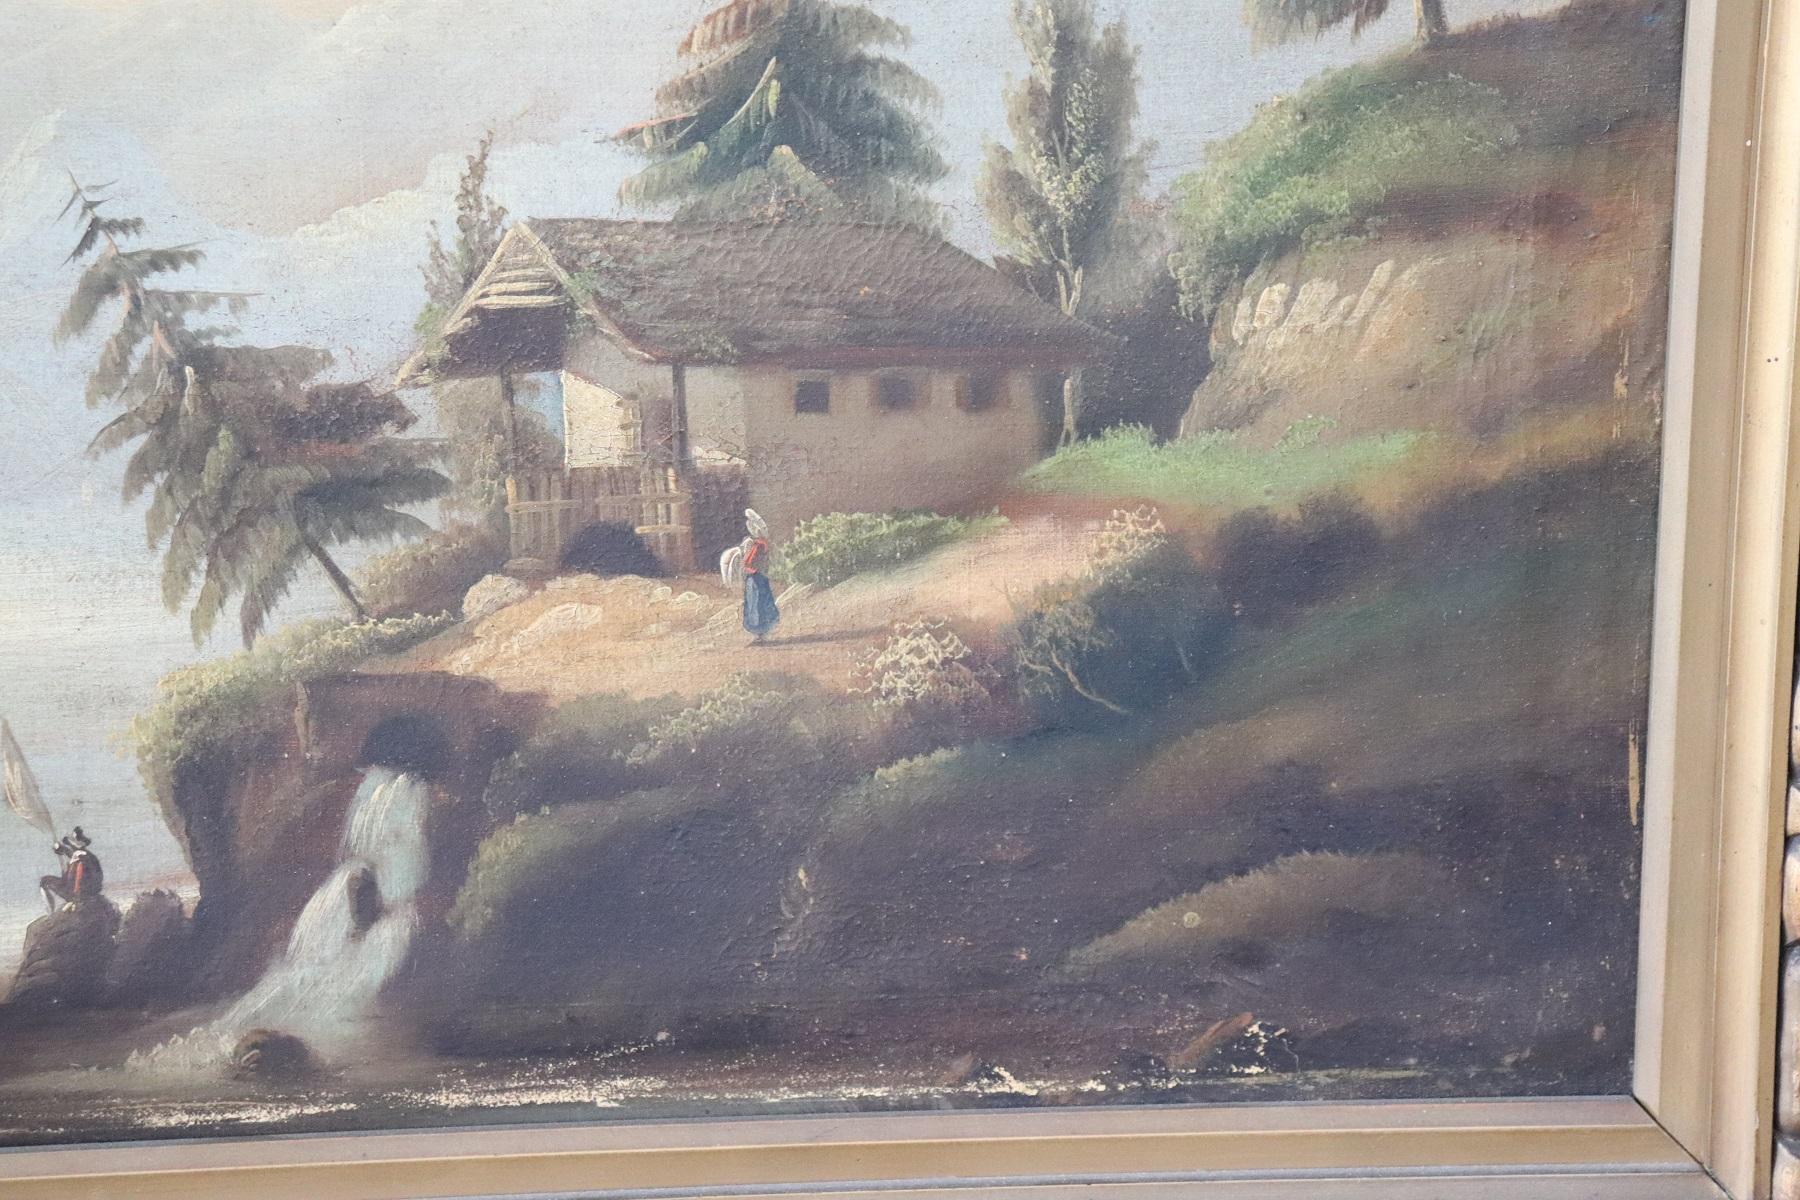 Belle peinture à l'huile sur toile du 19ème siècle non signée. École nordique d'excellente qualité picturale. Un paysage de lac avec quelques bateaux et des gens. Il y a quelques défauts causés par le passage des siècles. Vendu avec le cadre.
  